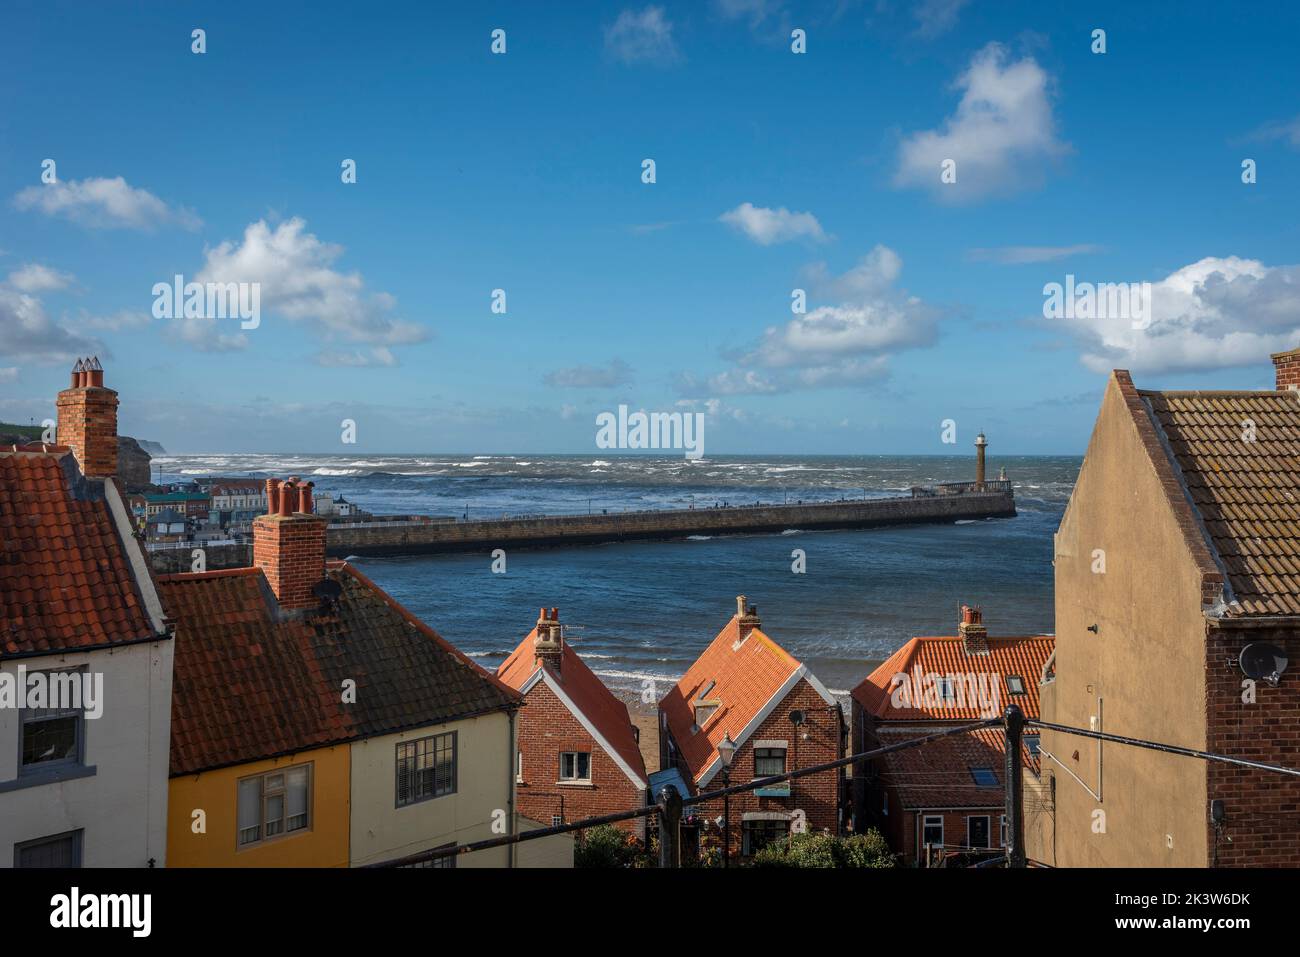 Vista della città sul mare e del porto di Whitby, dove il fiume Esk scorre nel Mare del Nord, nello Yorkshire, Regno Unito Foto Stock